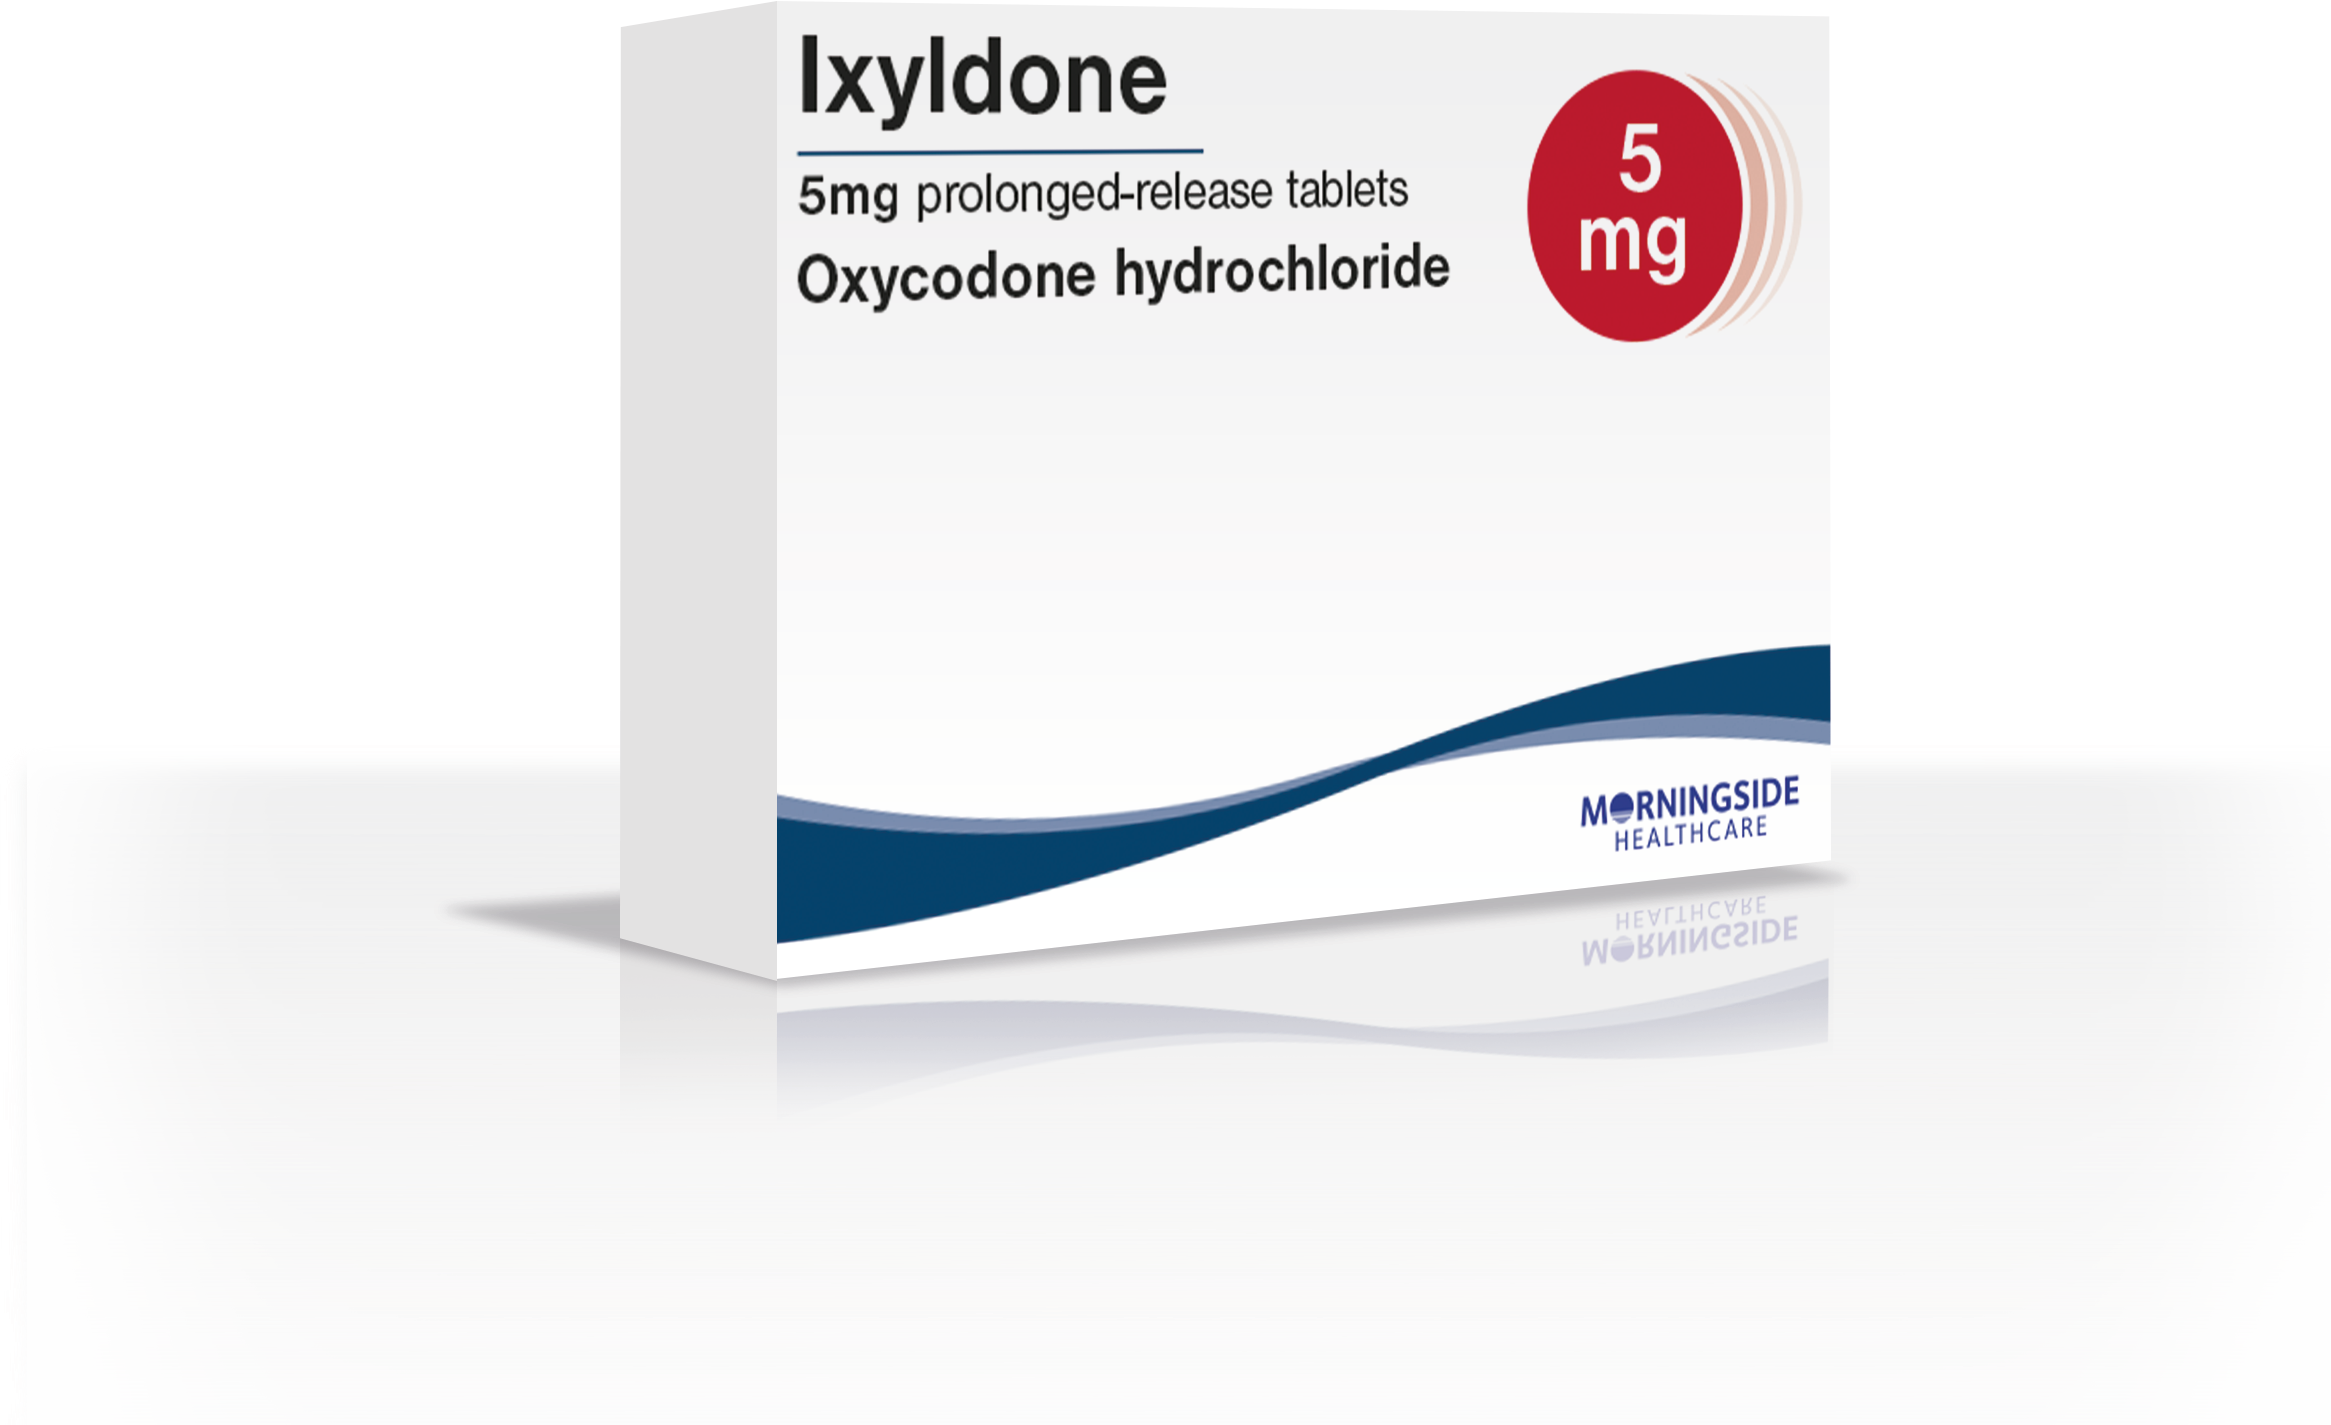 Ixyldone 5mg